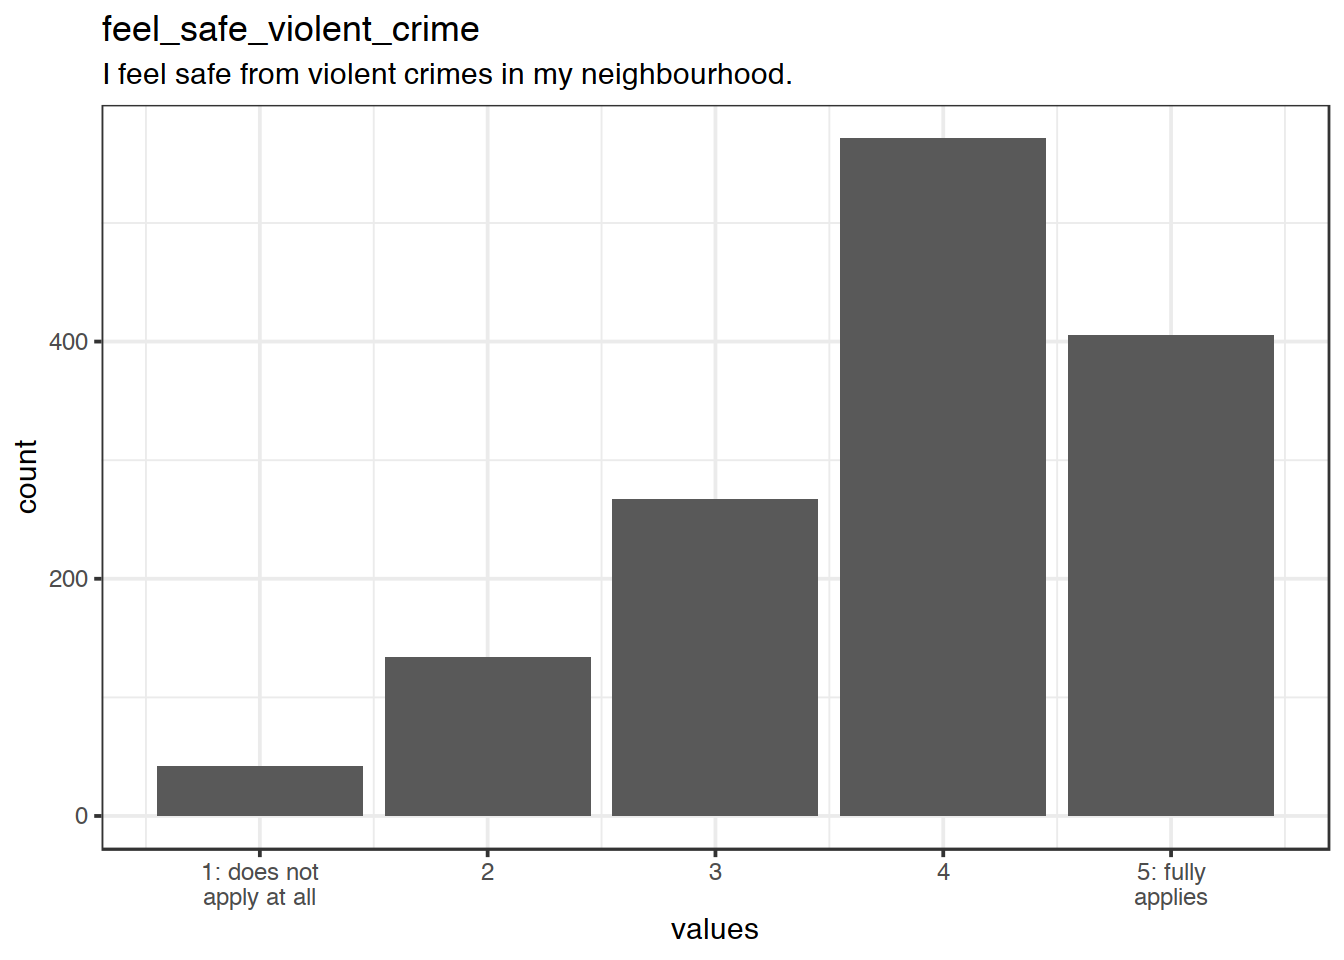 Distribution of values for feel_safe_violent_crime